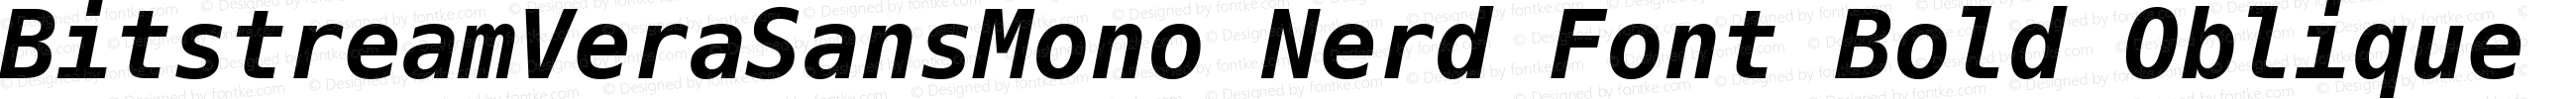 Bitstream Vera Sans Mono Bold Oblique Nerd Font Plus Font Awesome Plus Octicons Plus Pomicons Plus Font Linux